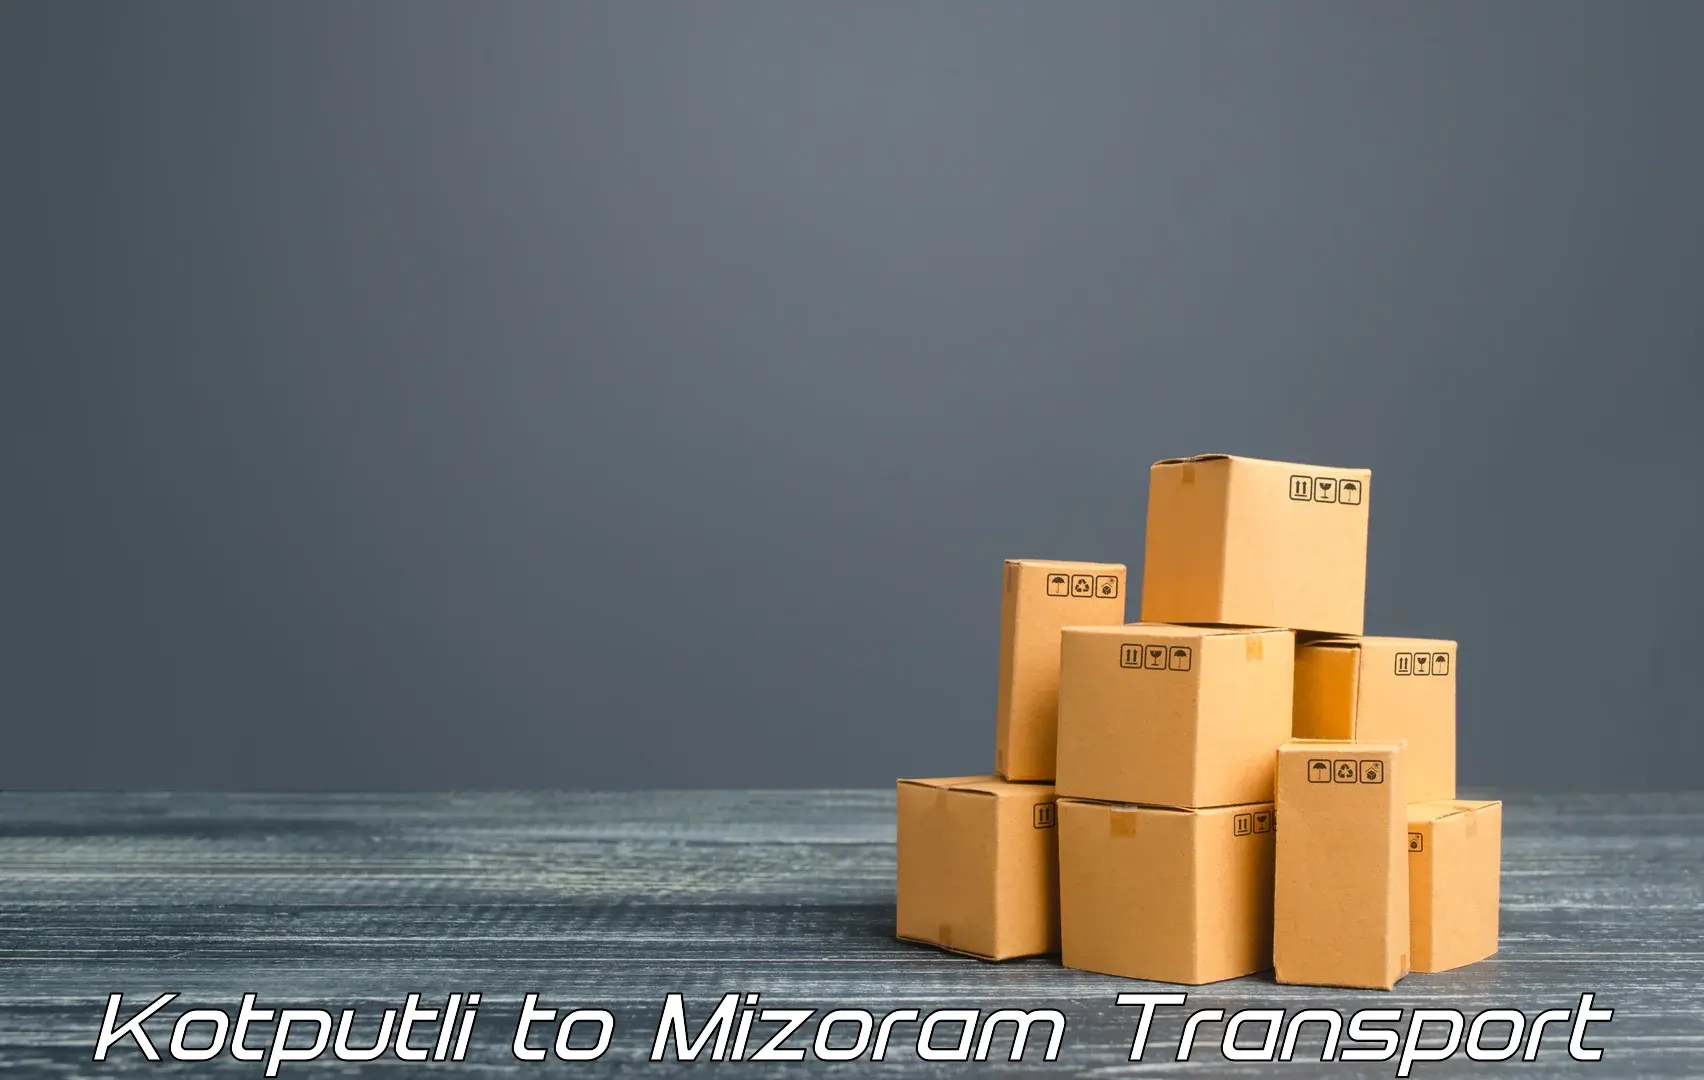 Shipping partner Kotputli to Mizoram